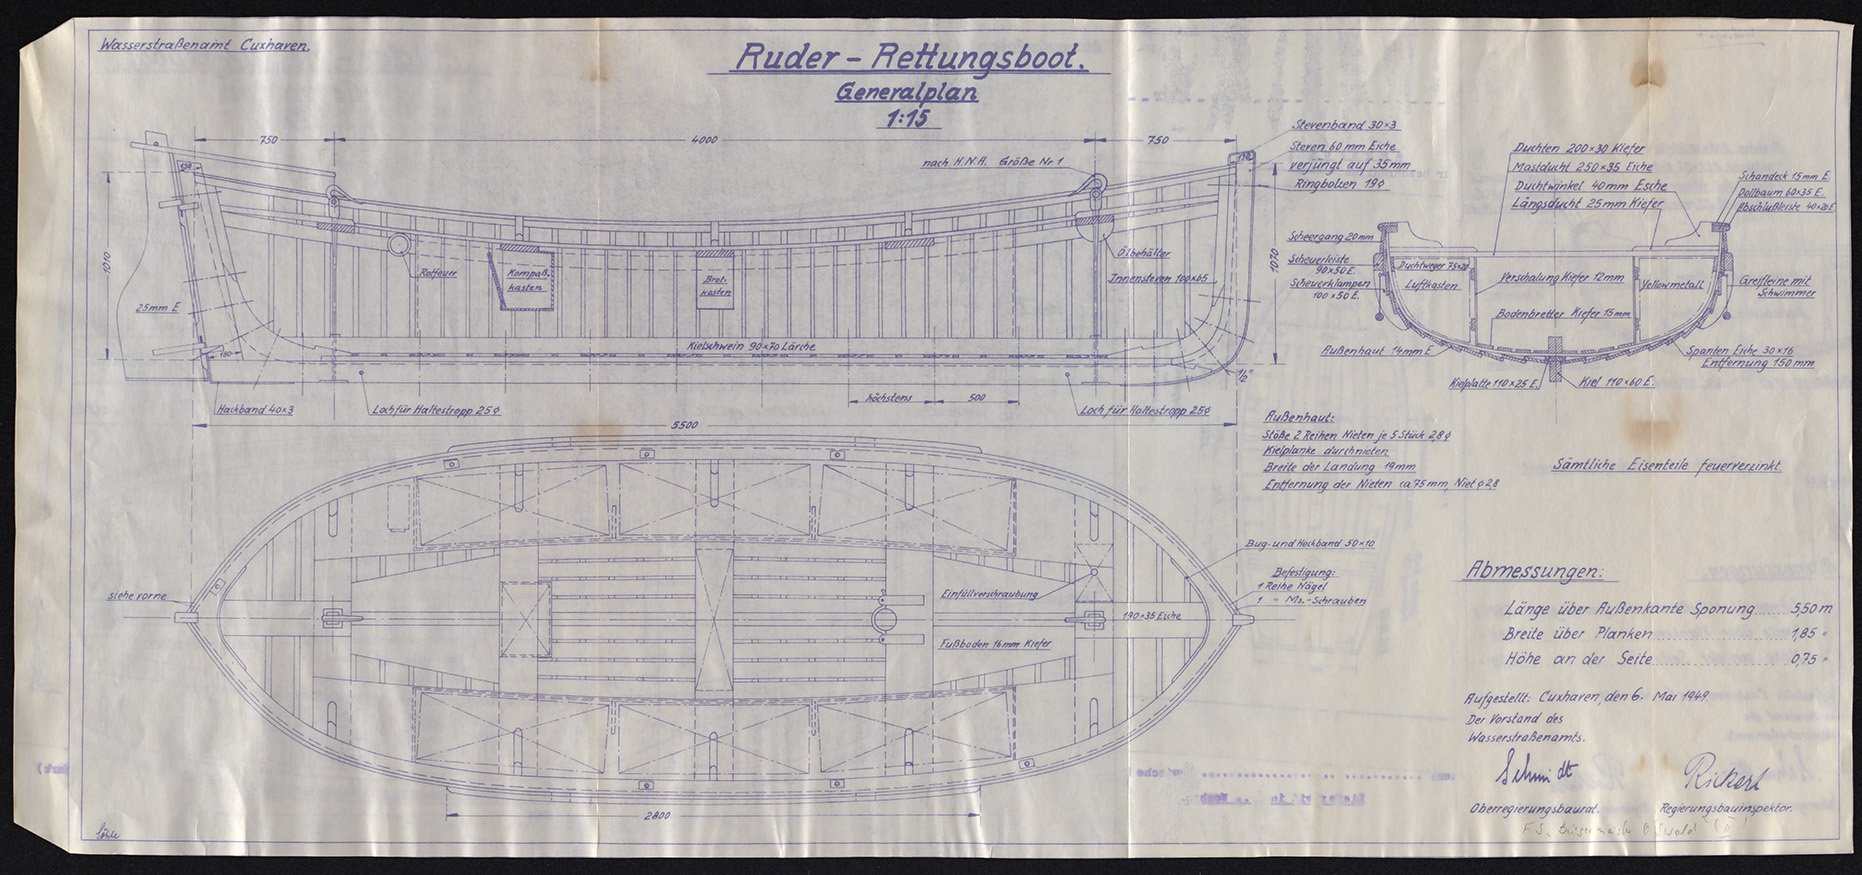 Feuerschiff Bürgermeister O'Swald II (ELBE I) - "Ruder- Rettungsboot Generalplan" - 06.05.1949 (Schiffahrtsmuseum Unterweser CC BY-NC-SA)